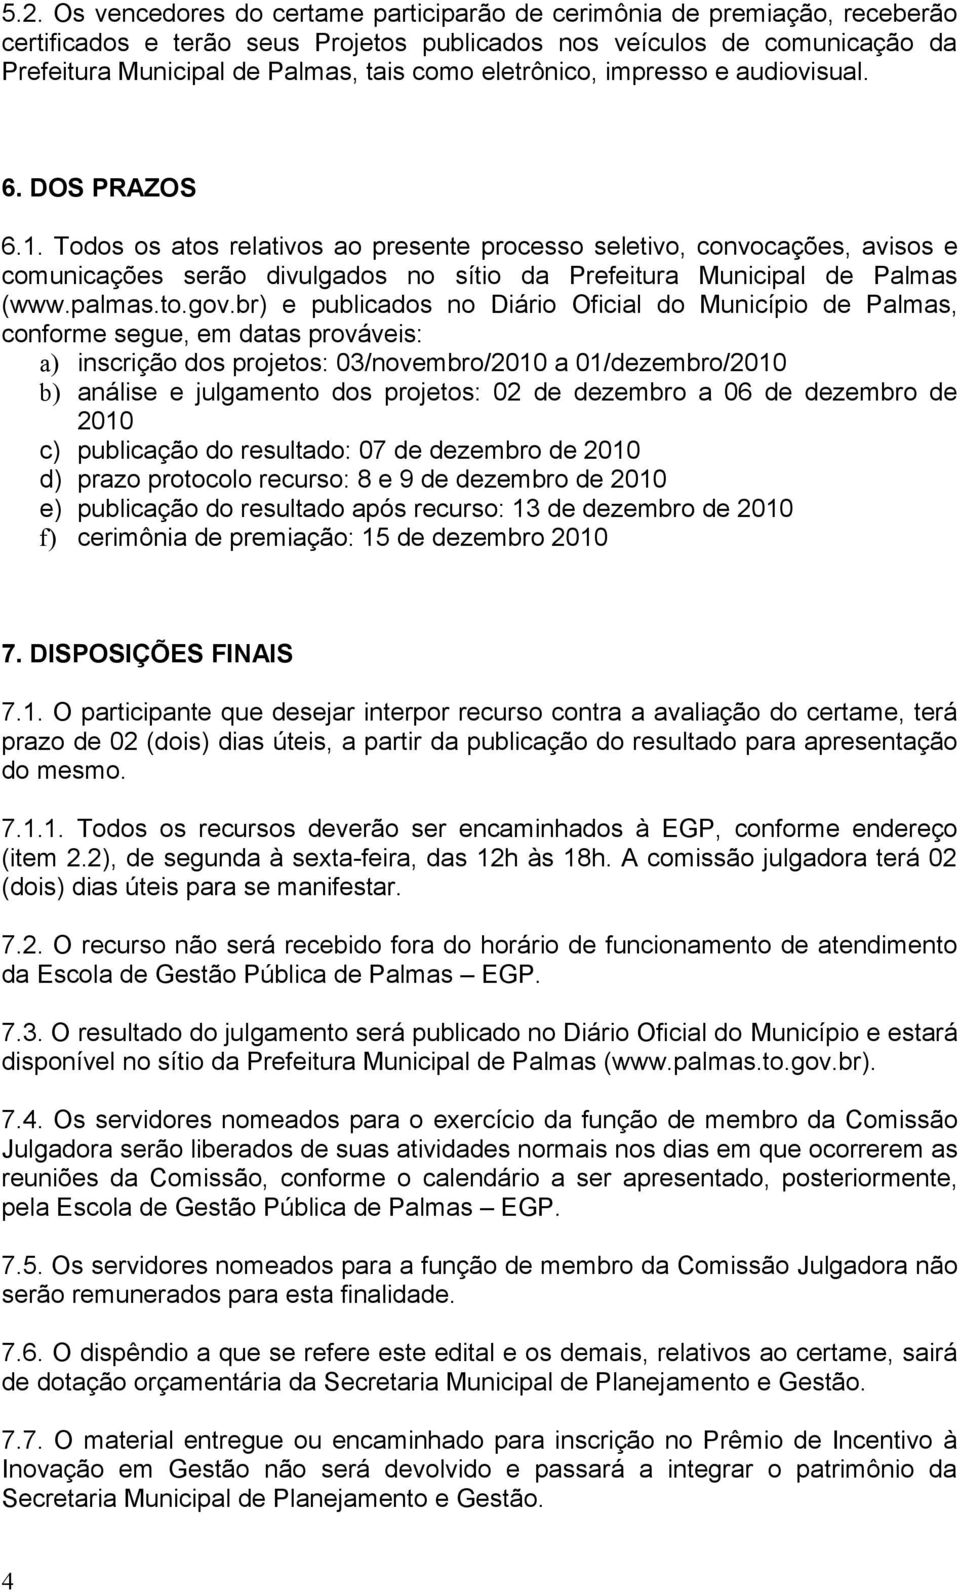 Todos os atos relativos ao presente processo seletivo, convocações, avisos e comunicações serão divulgados no sítio da Prefeitura Municipal de Palmas (www.palmas.to.gov.